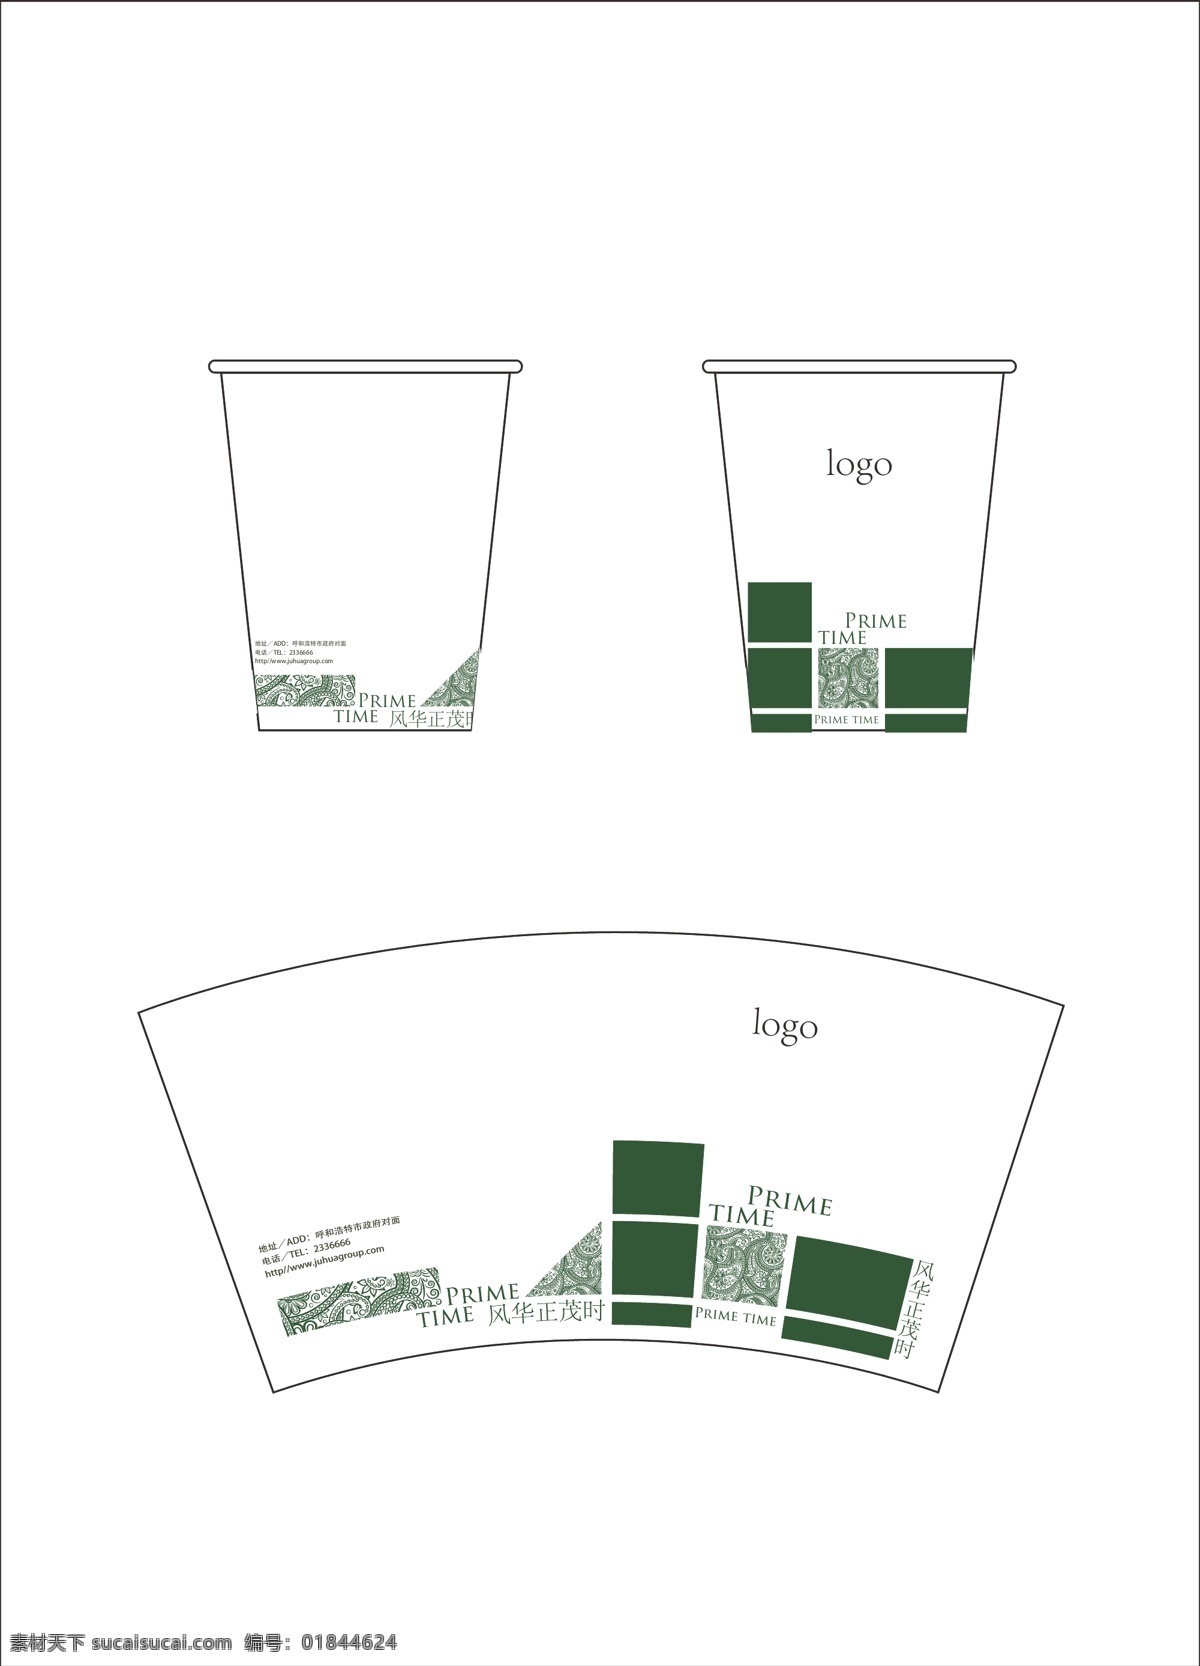 纸杯展开图 房地产纸杯 纸杯设计 房地产vi 办公用品 纸杯 绿色调 花纹 图文混排 vi设计